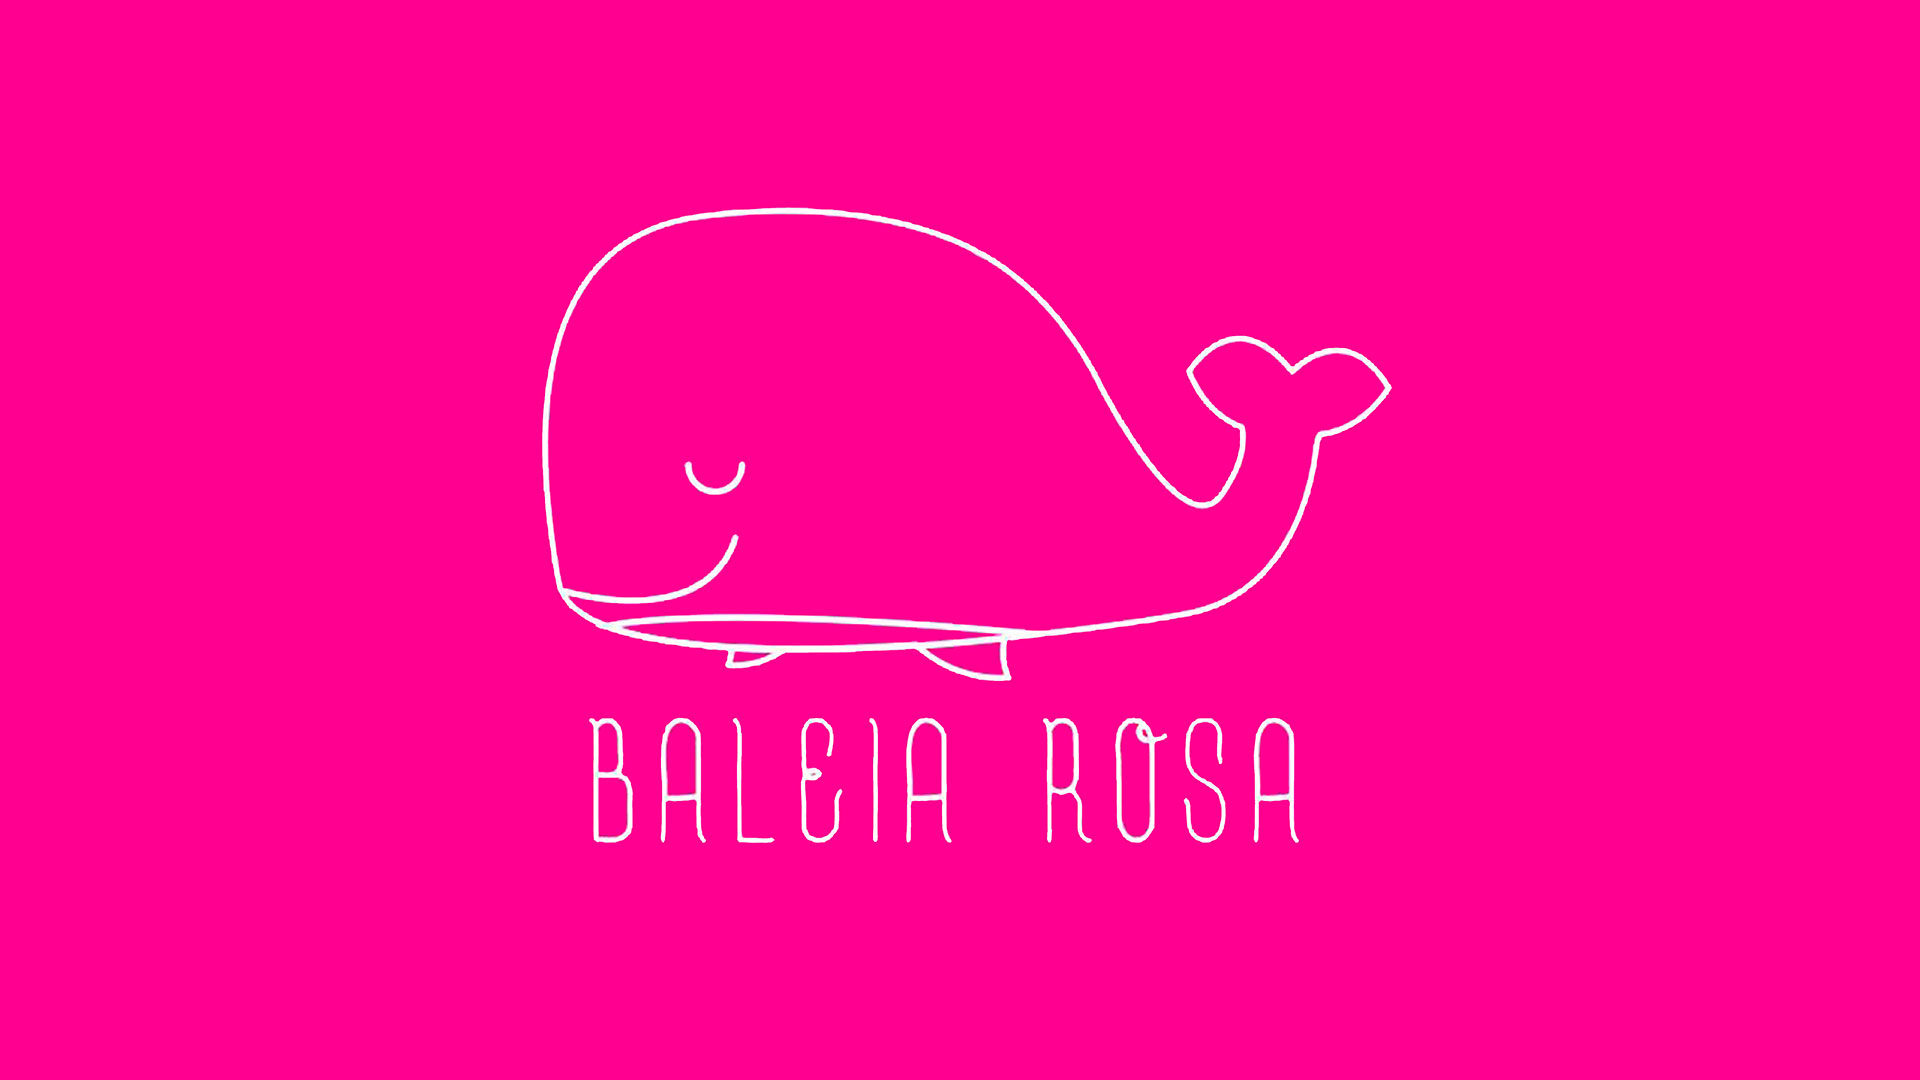 Capa do livro Baleia Rosa. Um fundo cor-de-rosa com uma baleia branca desenhada.